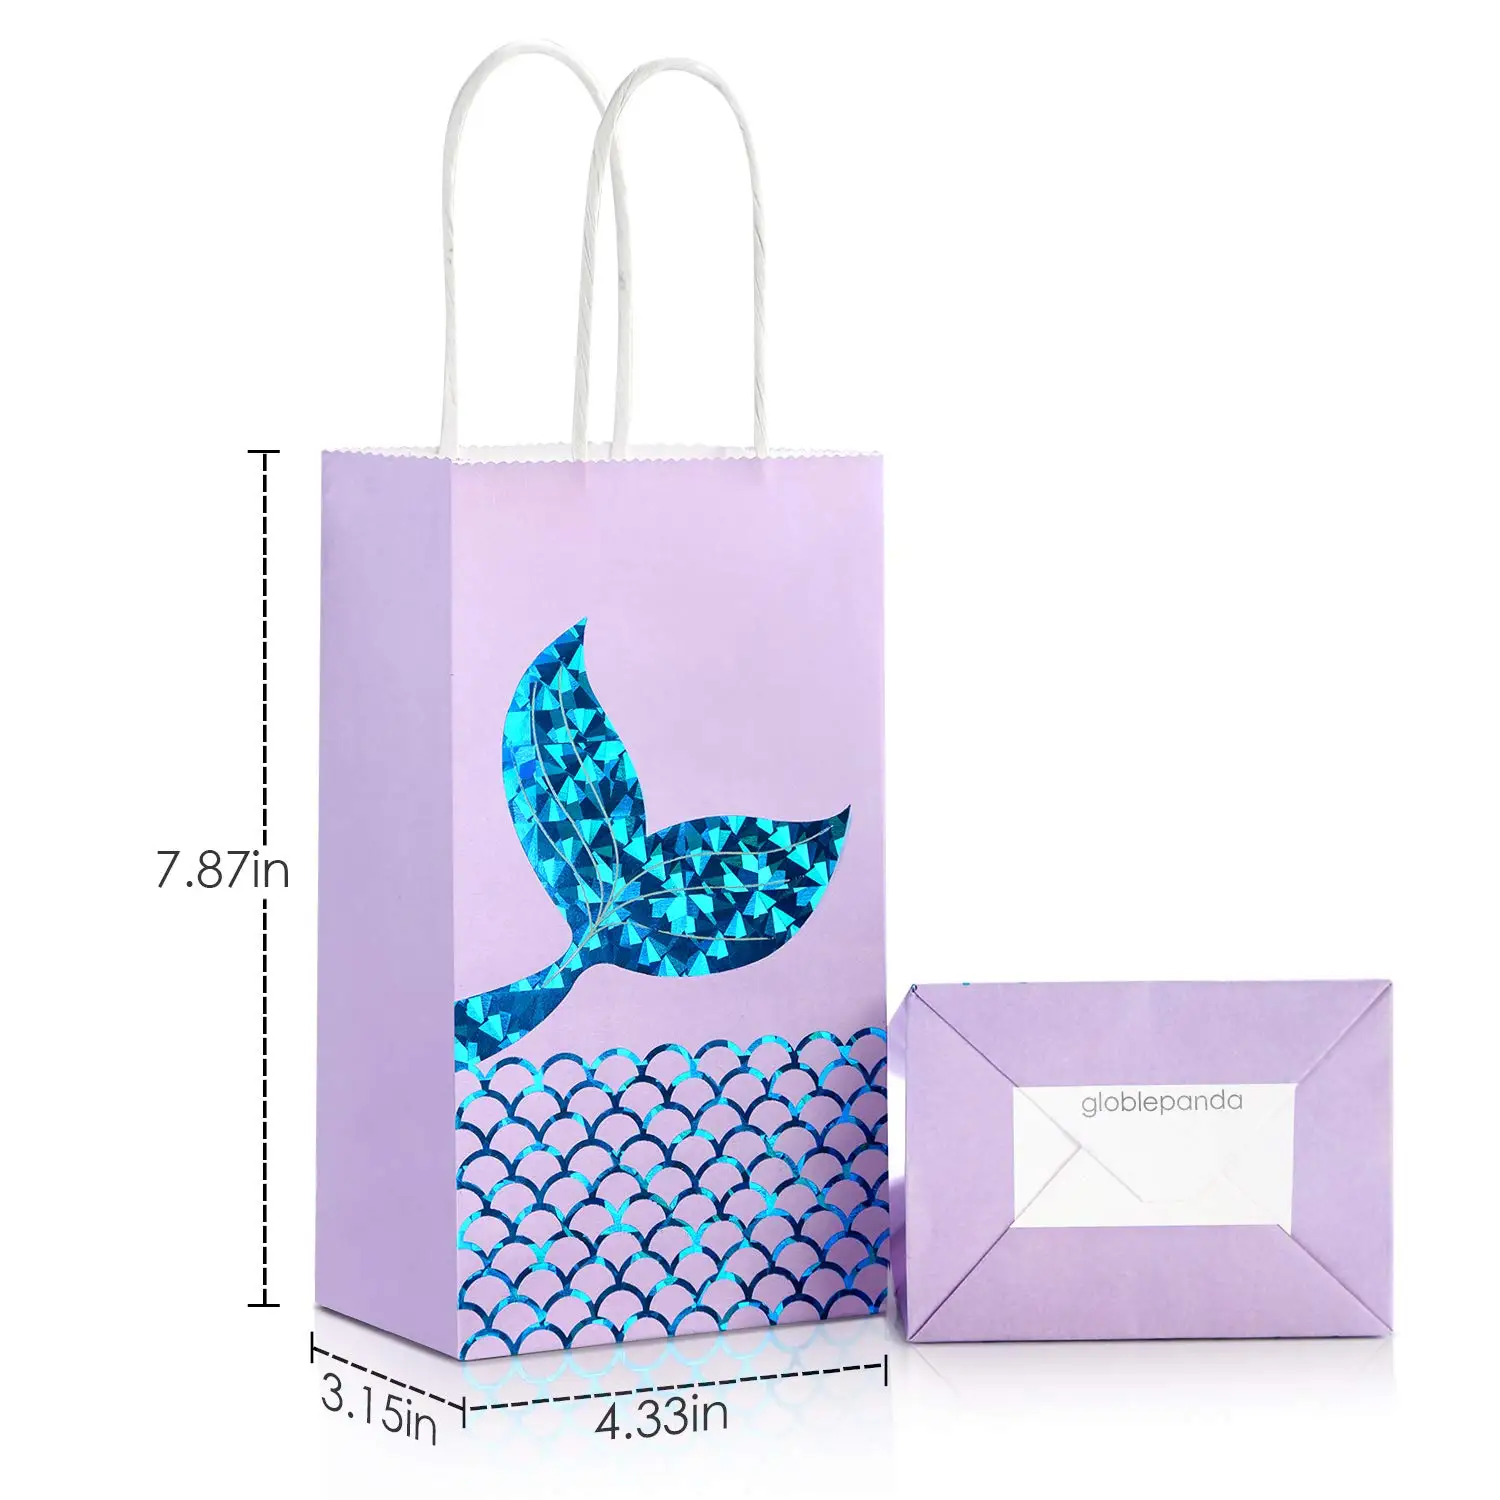 METABLE 12 пачек сувениров Русалка подарочные сумки Goodie Bag блеск обрабатывать бумагу сумки для детей девочек Русалка тематические день рождения